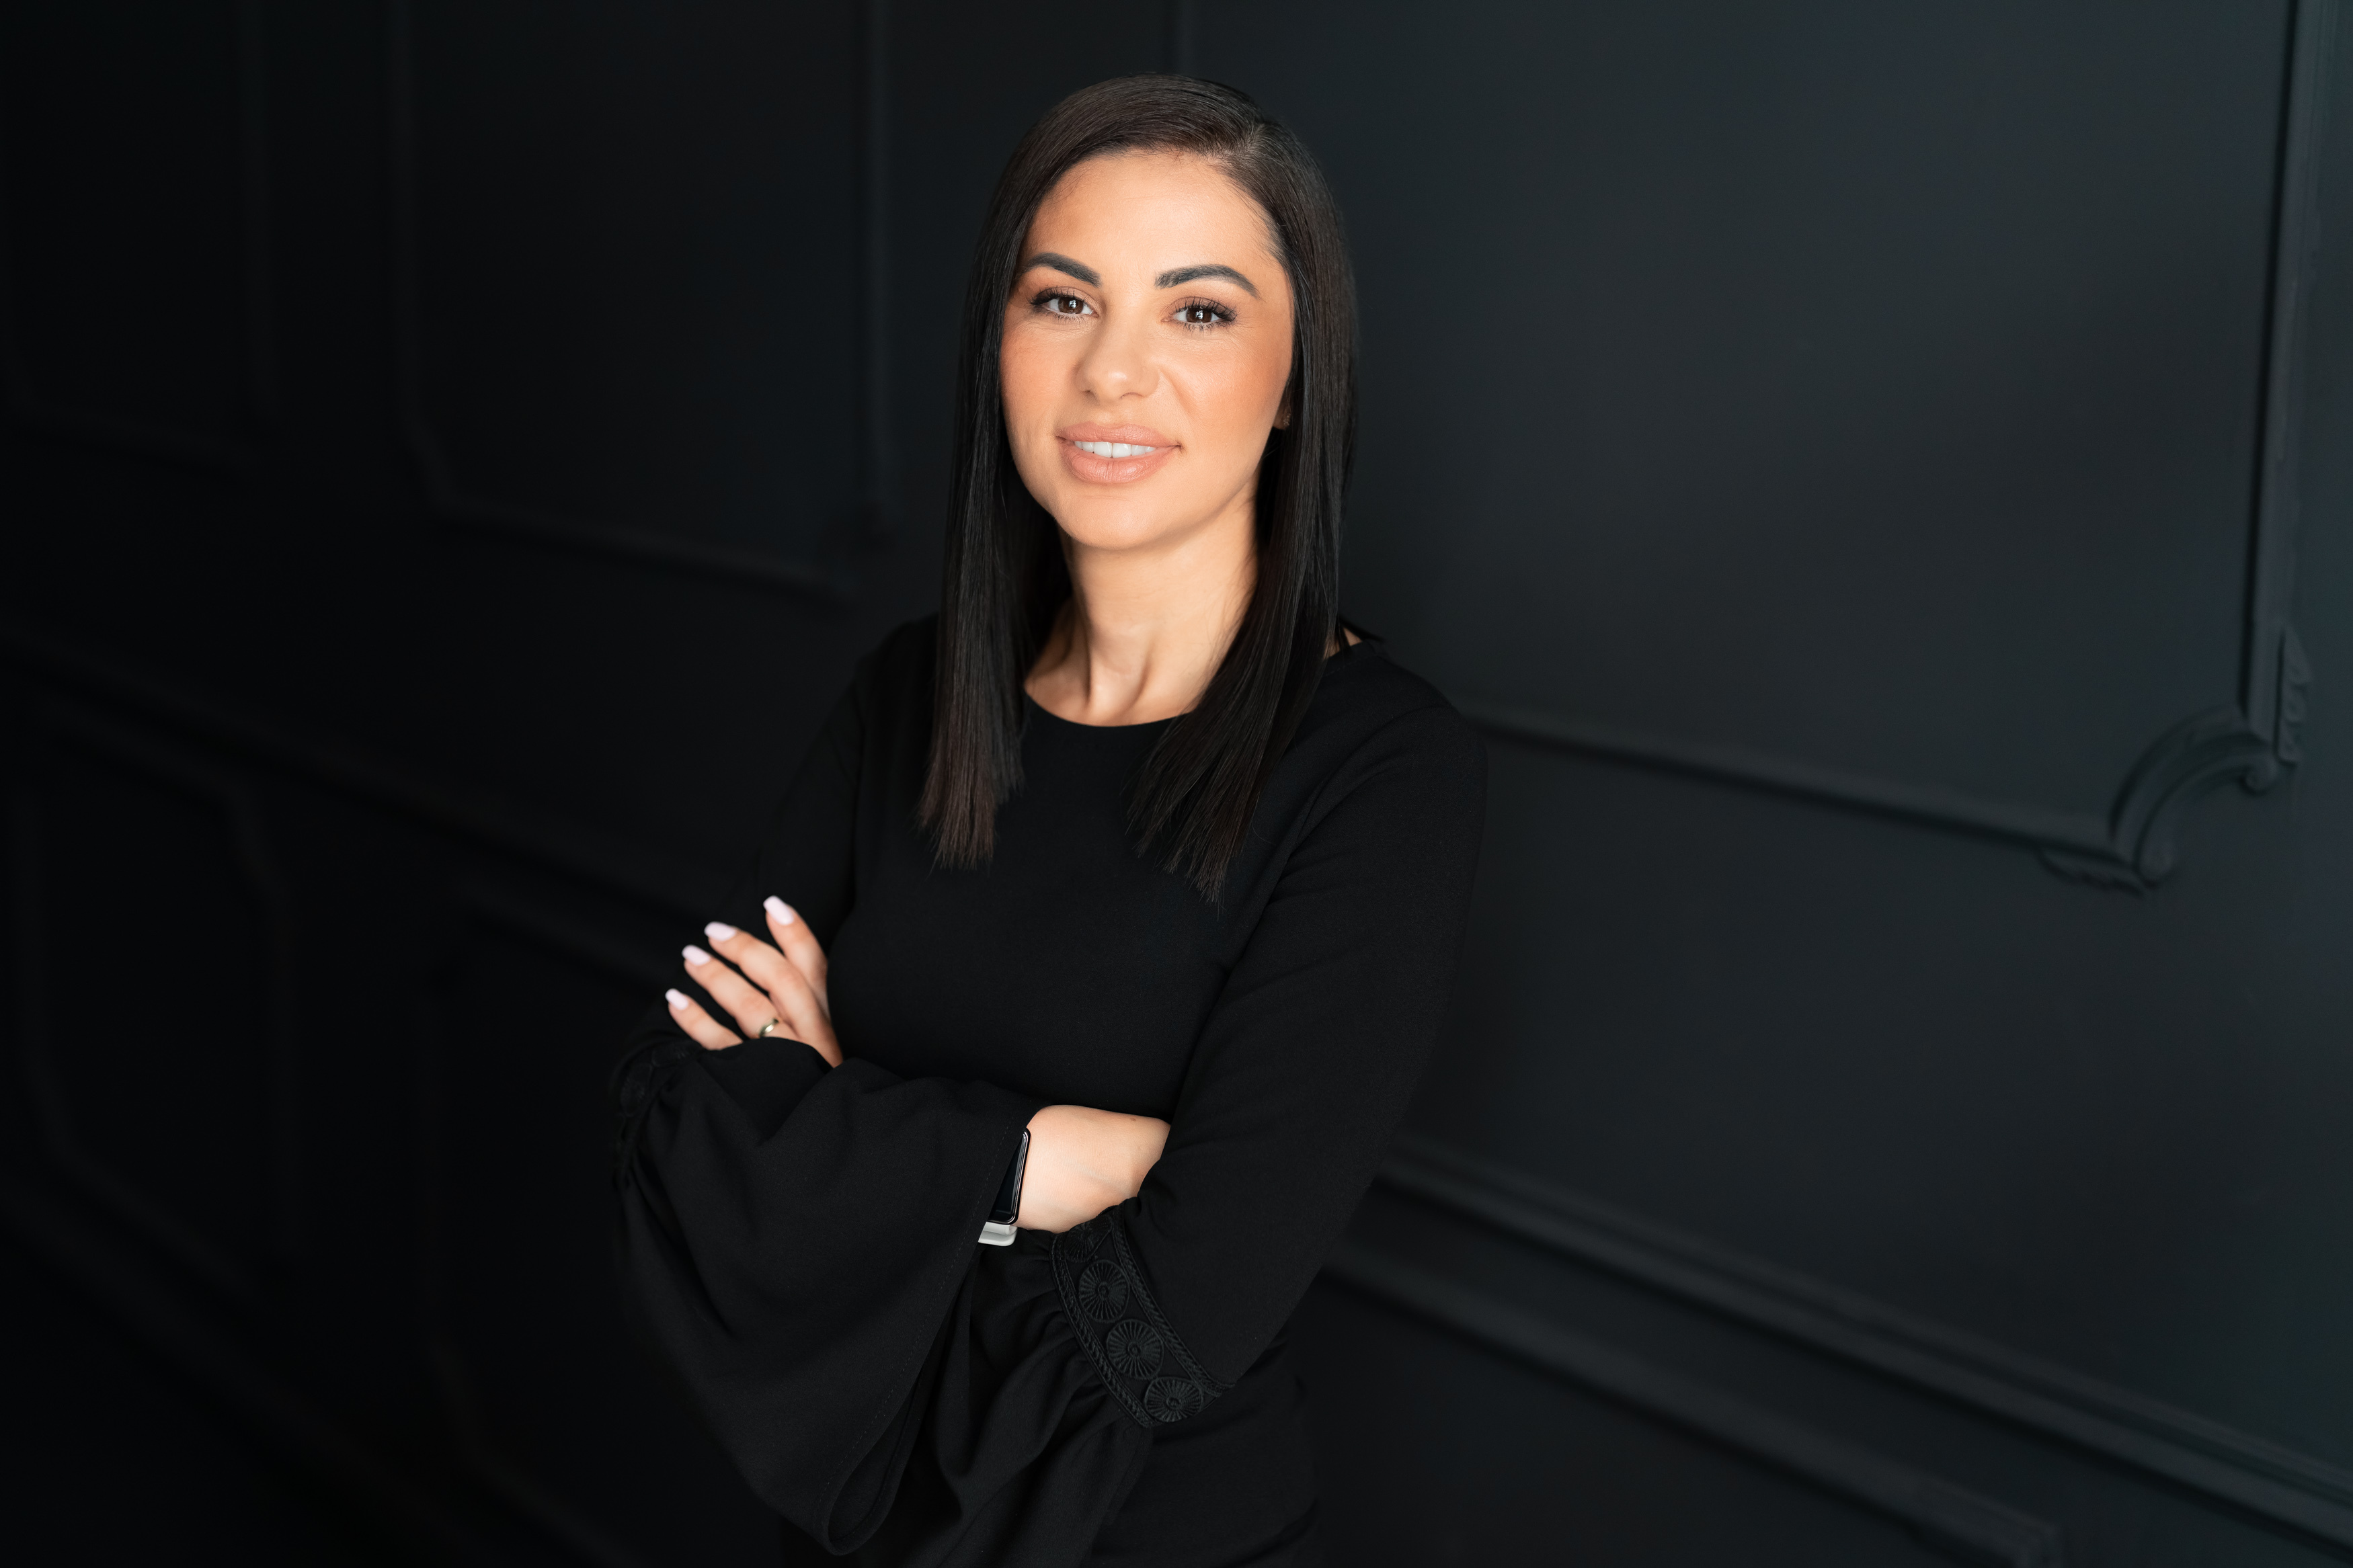 Numire cheie în boardul Carrefour România: Alina Gamauf, director de HR în cadrul companiei, preia conducerea departamentelor de Expansiune şi Property